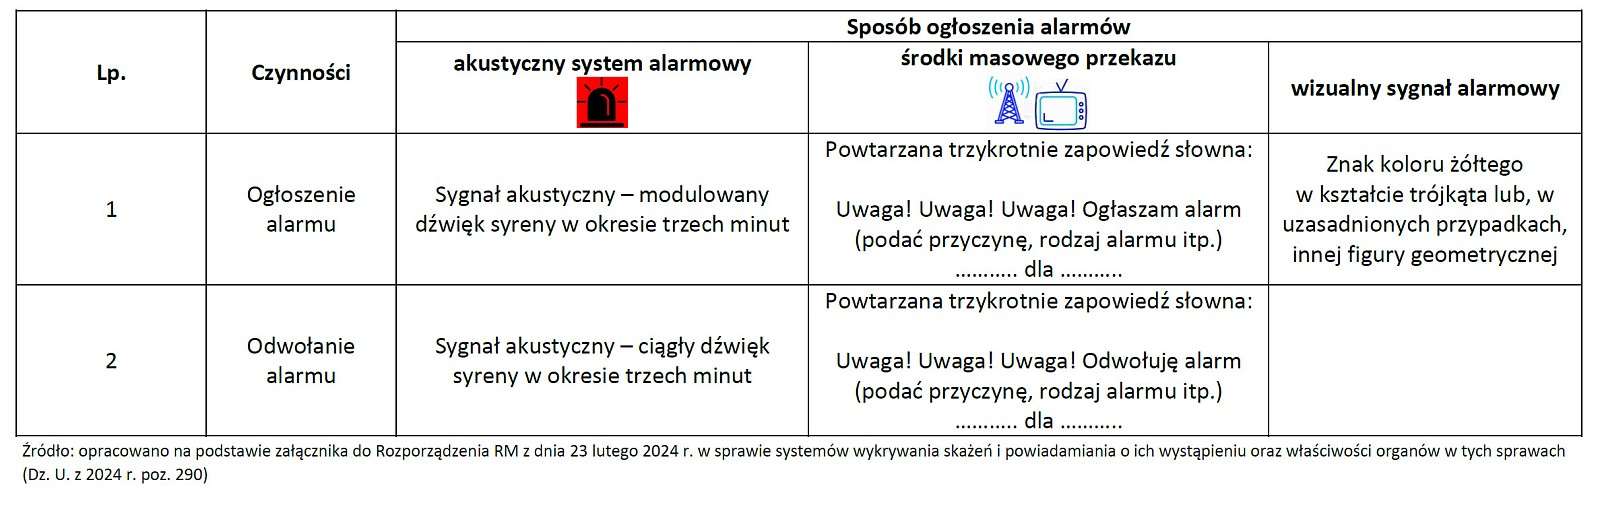 sygnaly-alarmowe-obowiązujące-na-Terytorium-Rzeczypospolitej-Polskiej.jpg [289.47 KB]